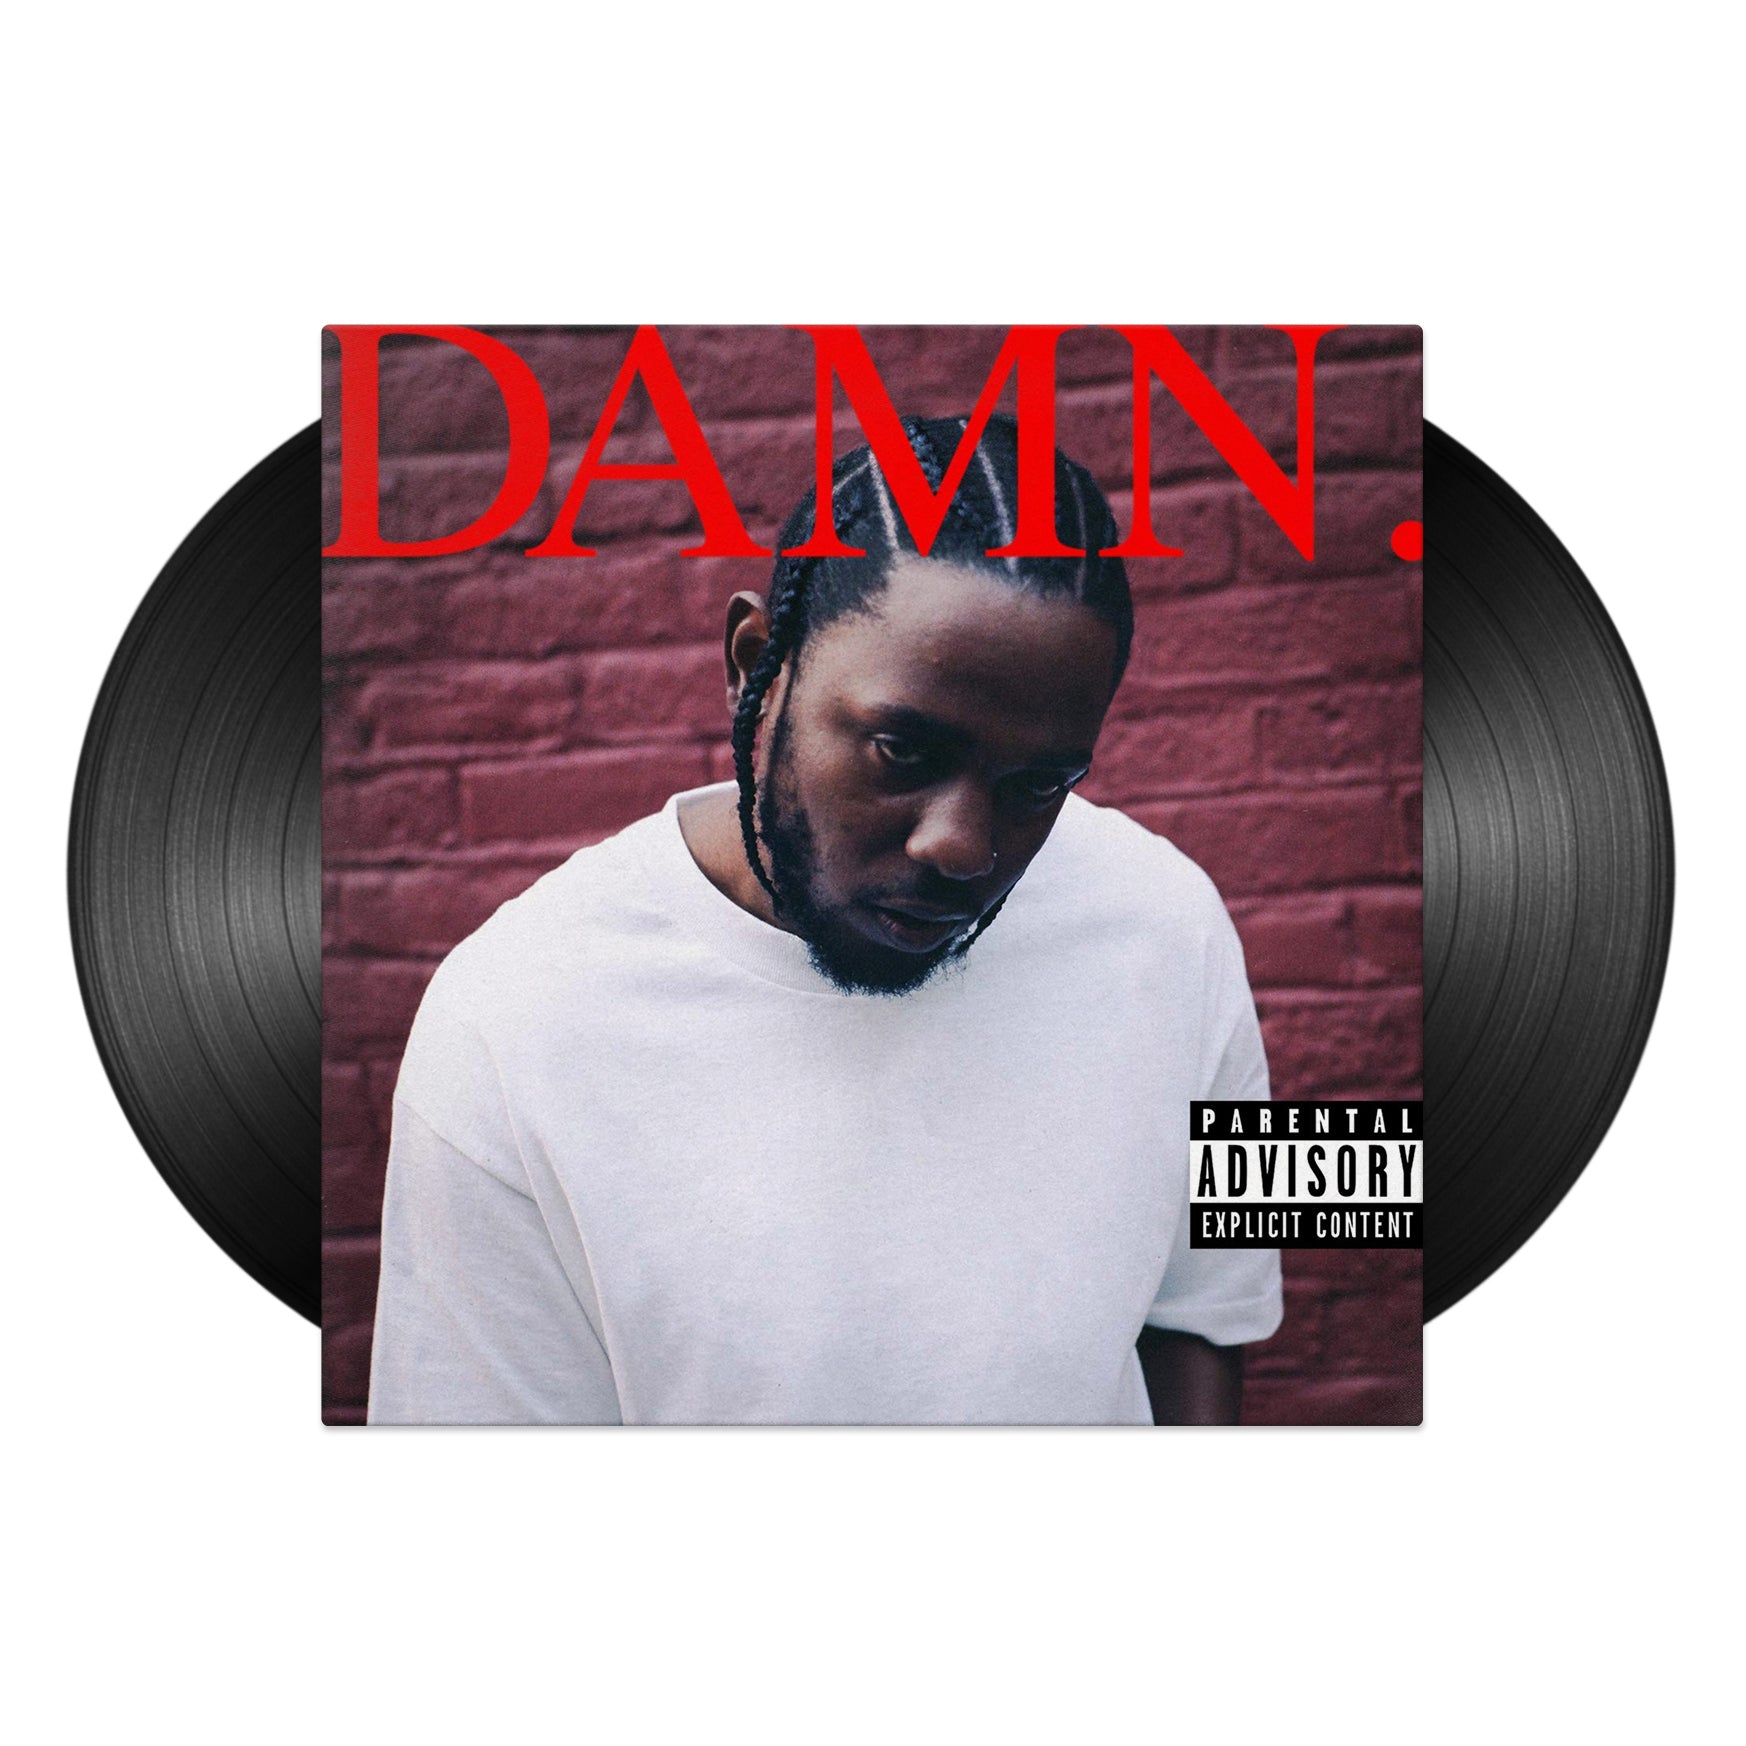 Kendrick Lamar - To Pimp a Butterfly [Explicit Lyrics] (Vinyl)